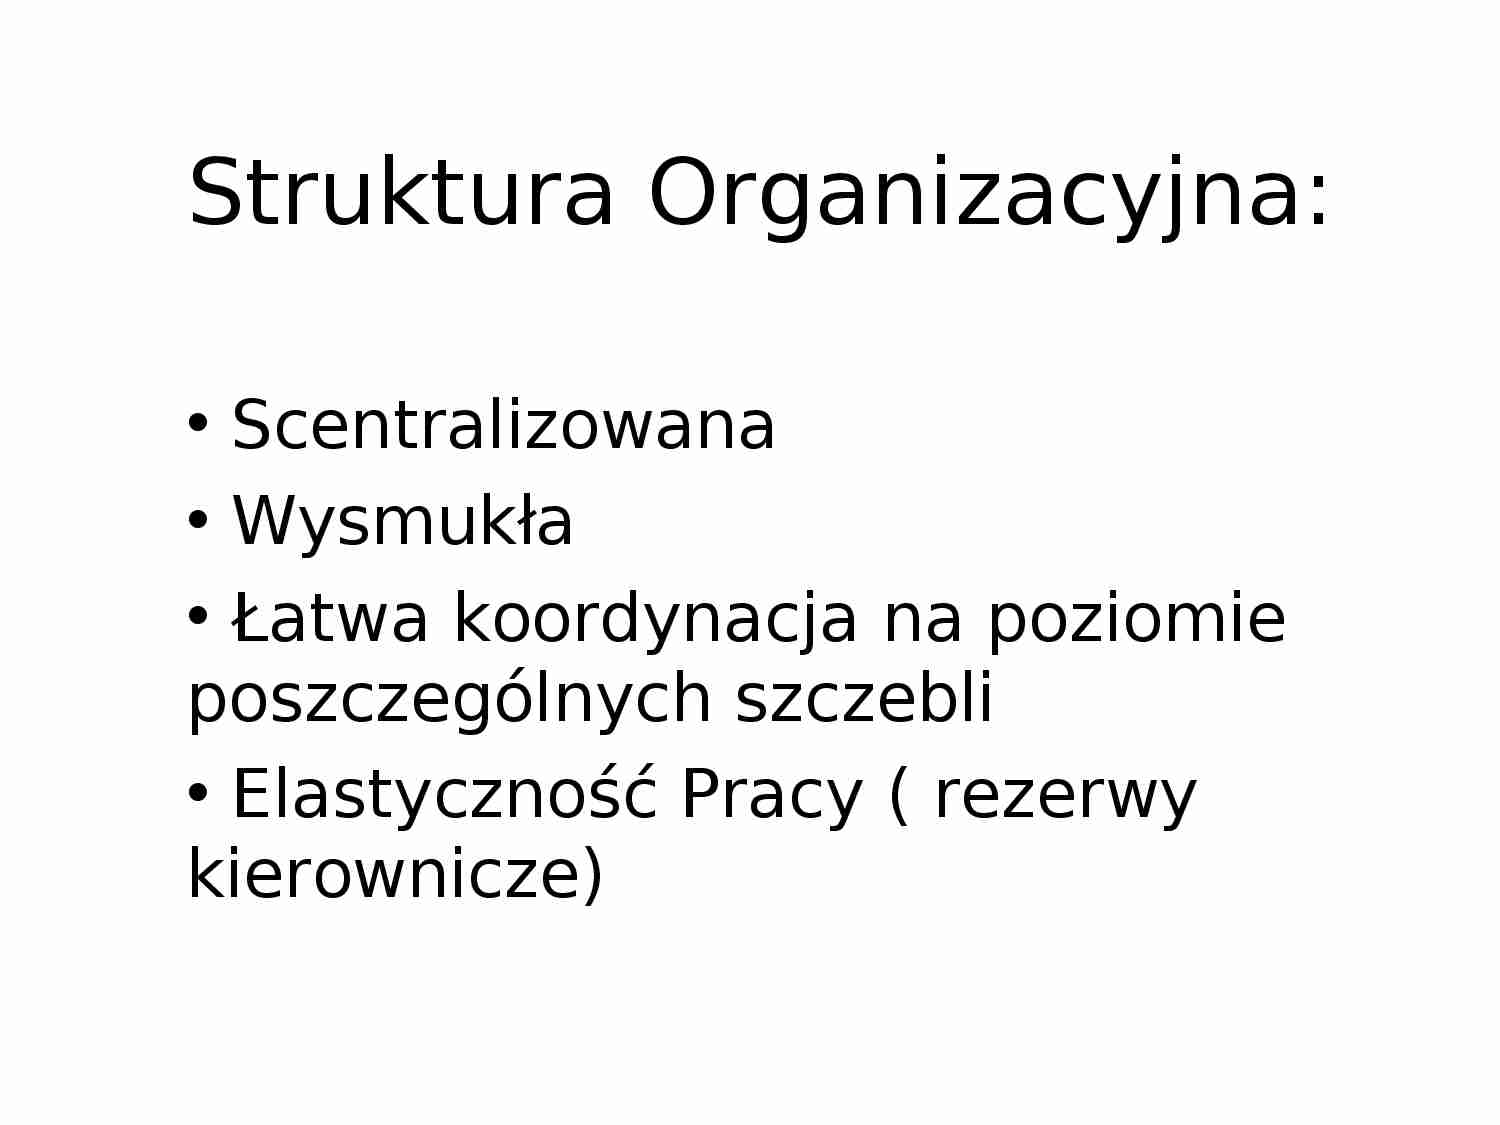 Struktura Organizacyjna i analiza PEST - prezentacja - strona 1